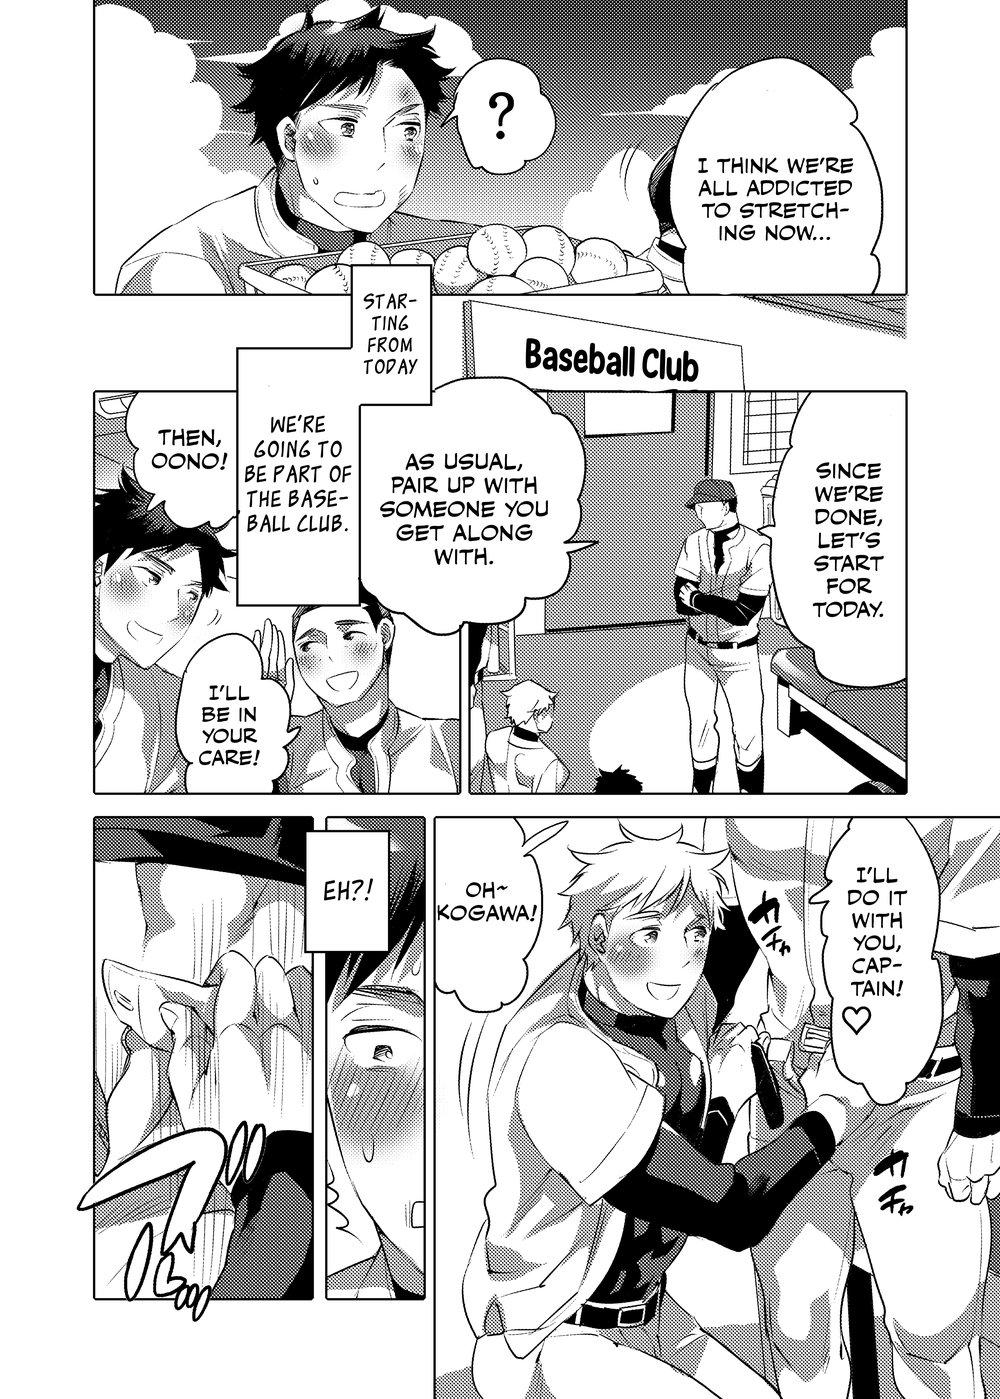 Punheta Homo Ochi Gakuen Baseball Club Flaquita - Page 3